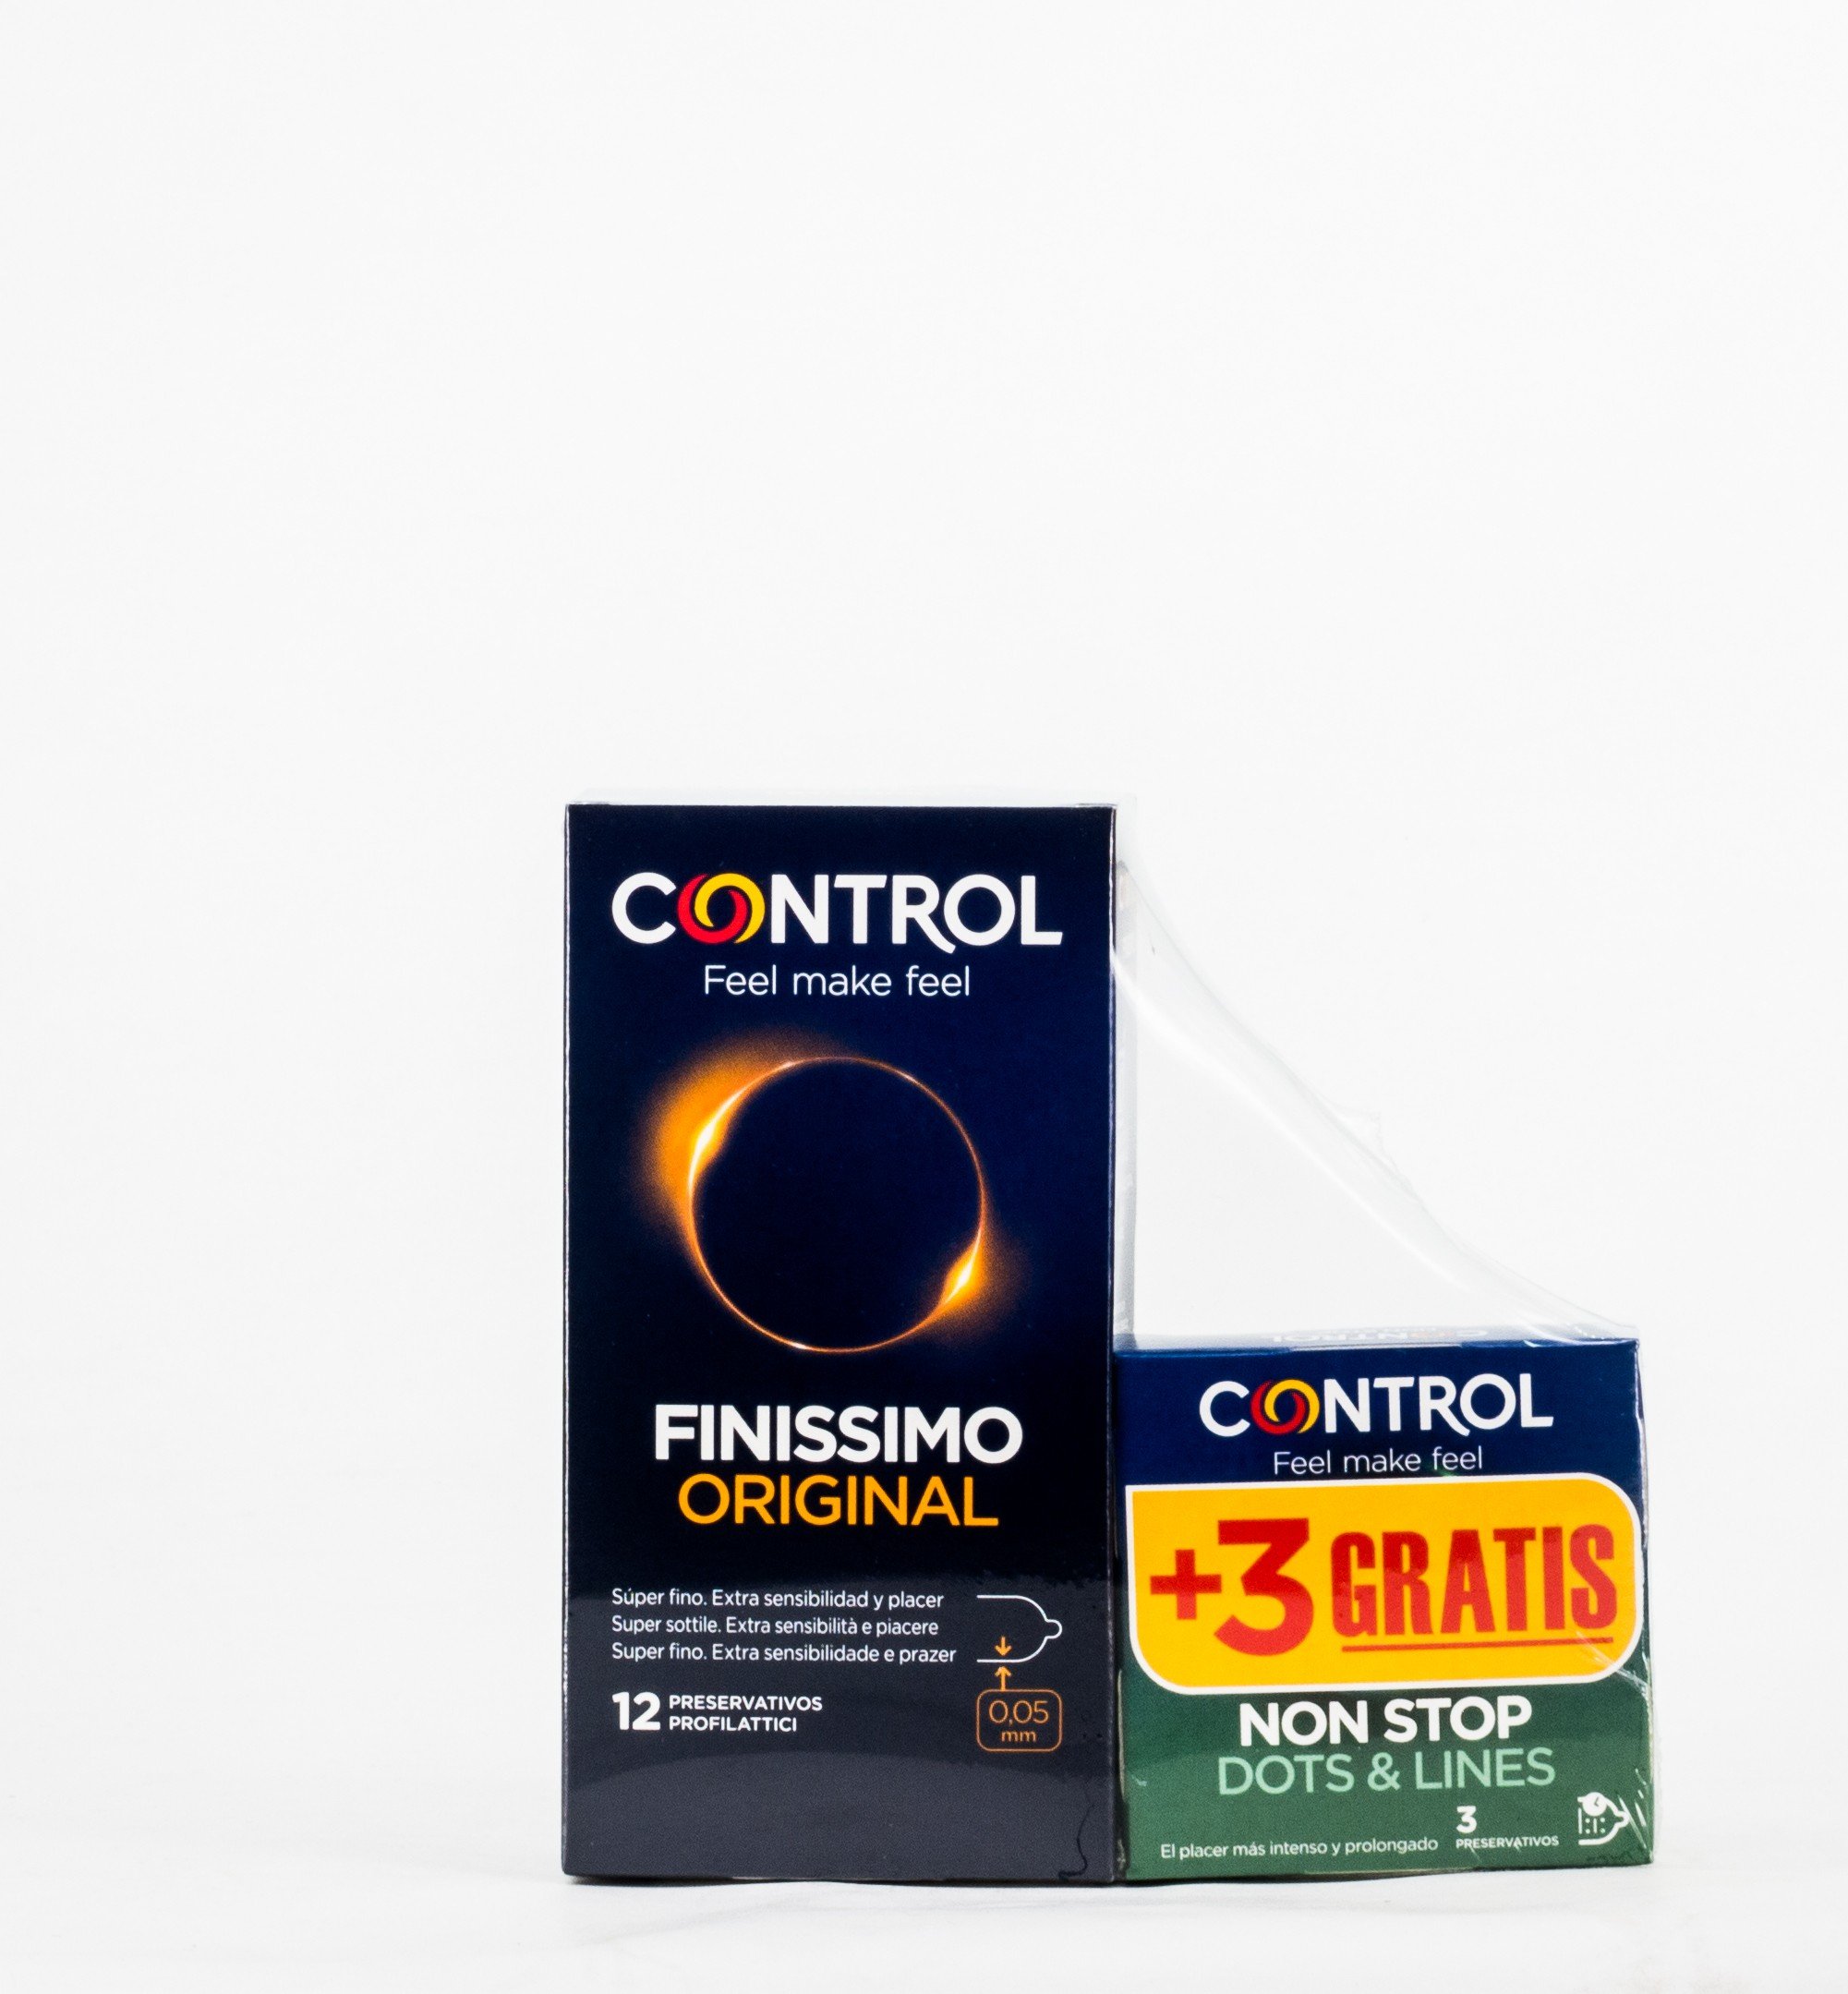 Control Finissimo, 12 preservativos.